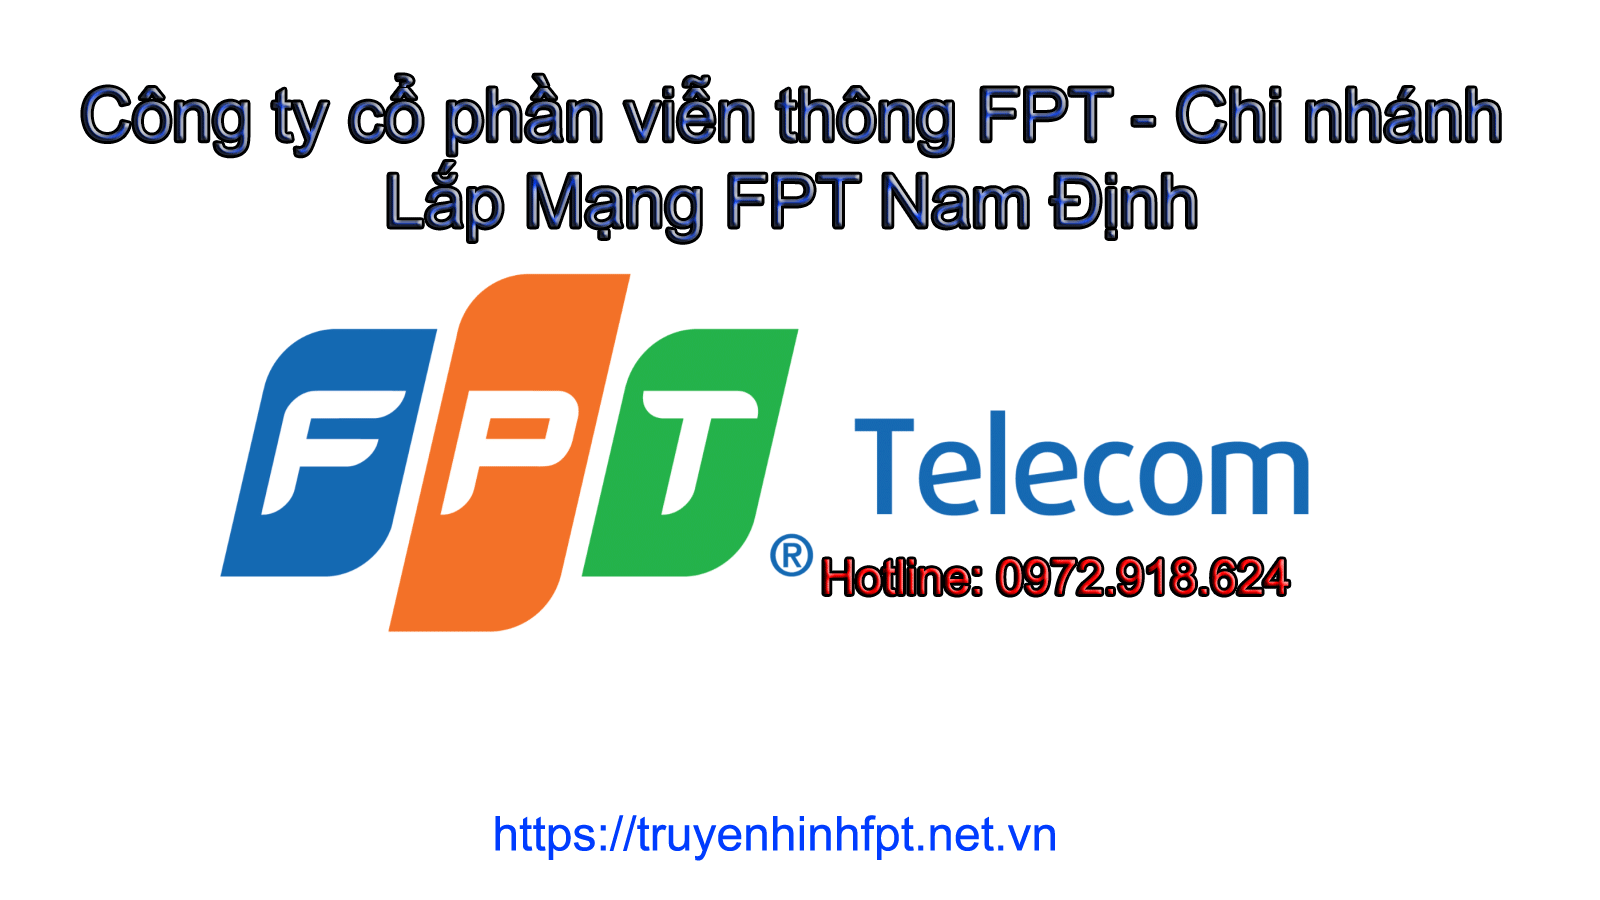 Lắp Mạng FPT Nam Định